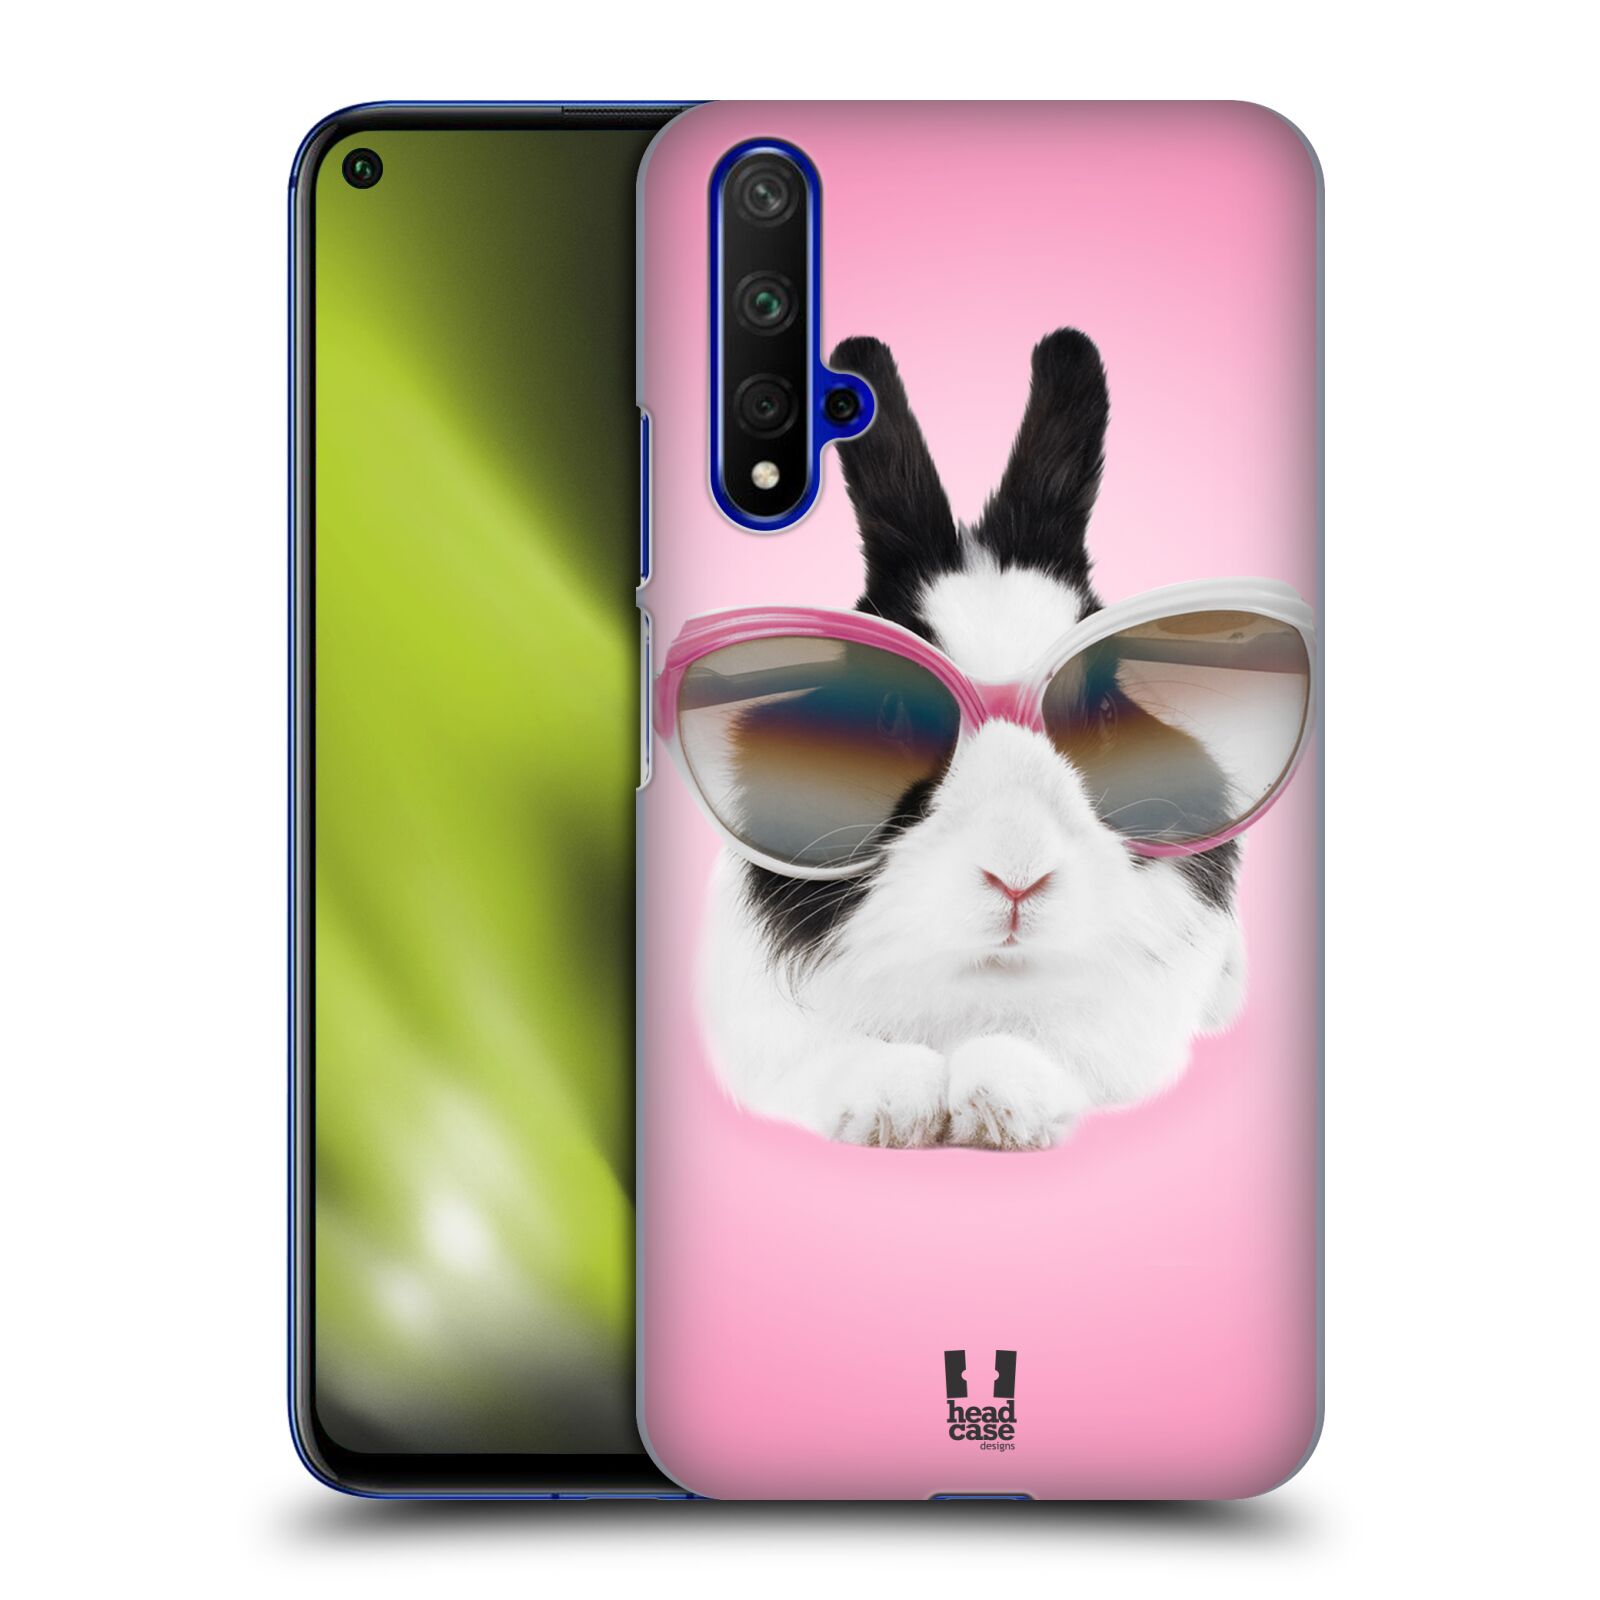 Pouzdro na mobil Honor 20 - HEAD CASE - vzor Legrační zvířátka roztomilý králíček s brýlemi růžová